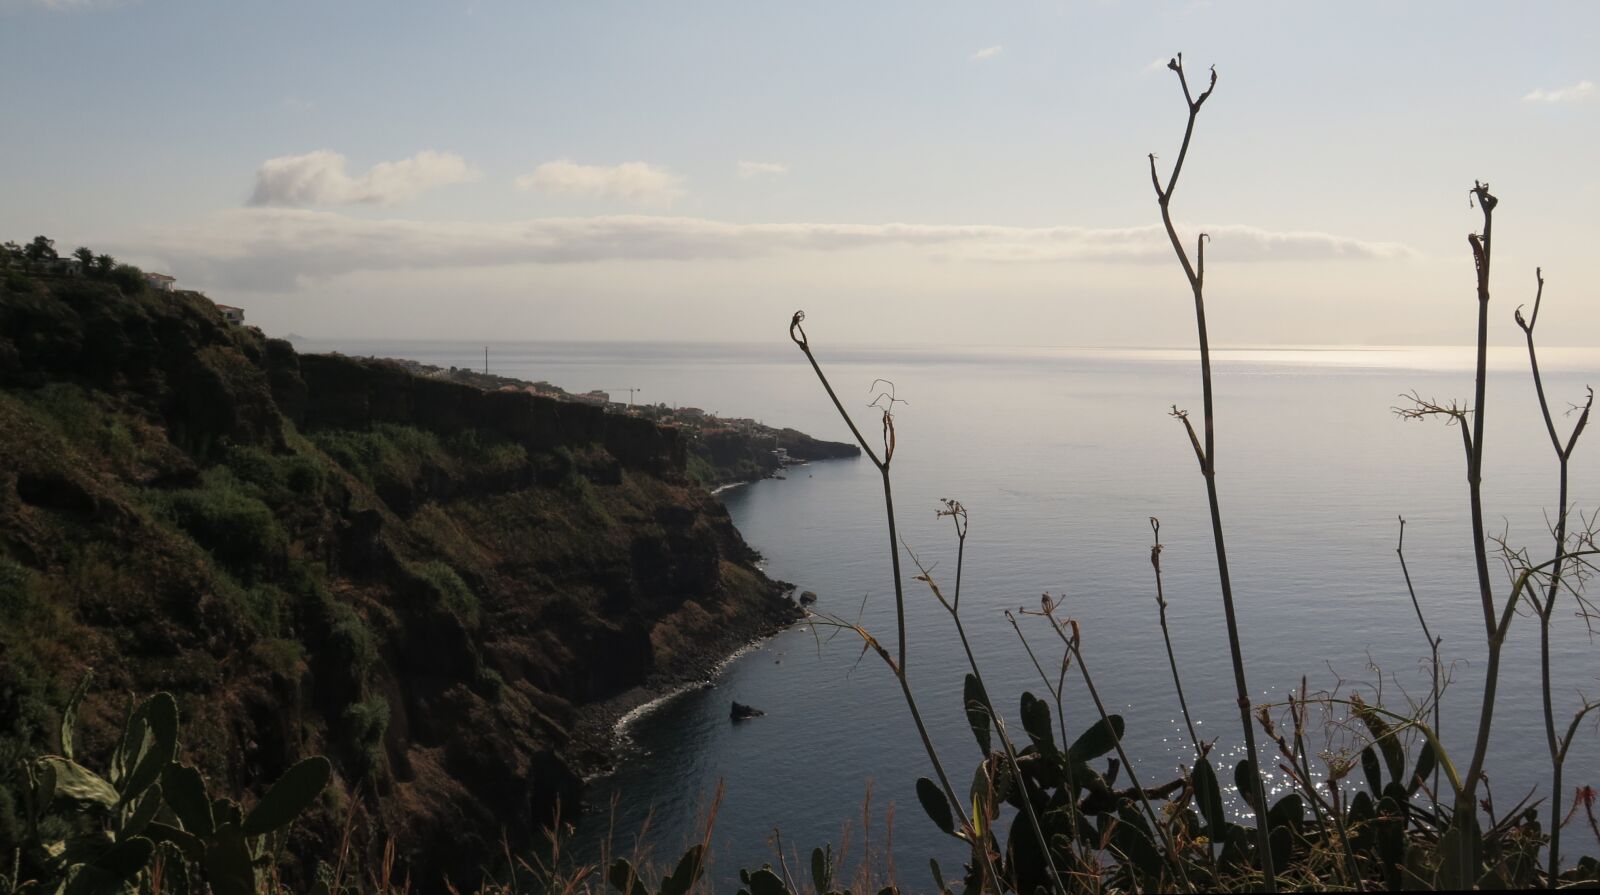 Canon PowerShot G16 sample photo. Madeira, coast, sunset photography